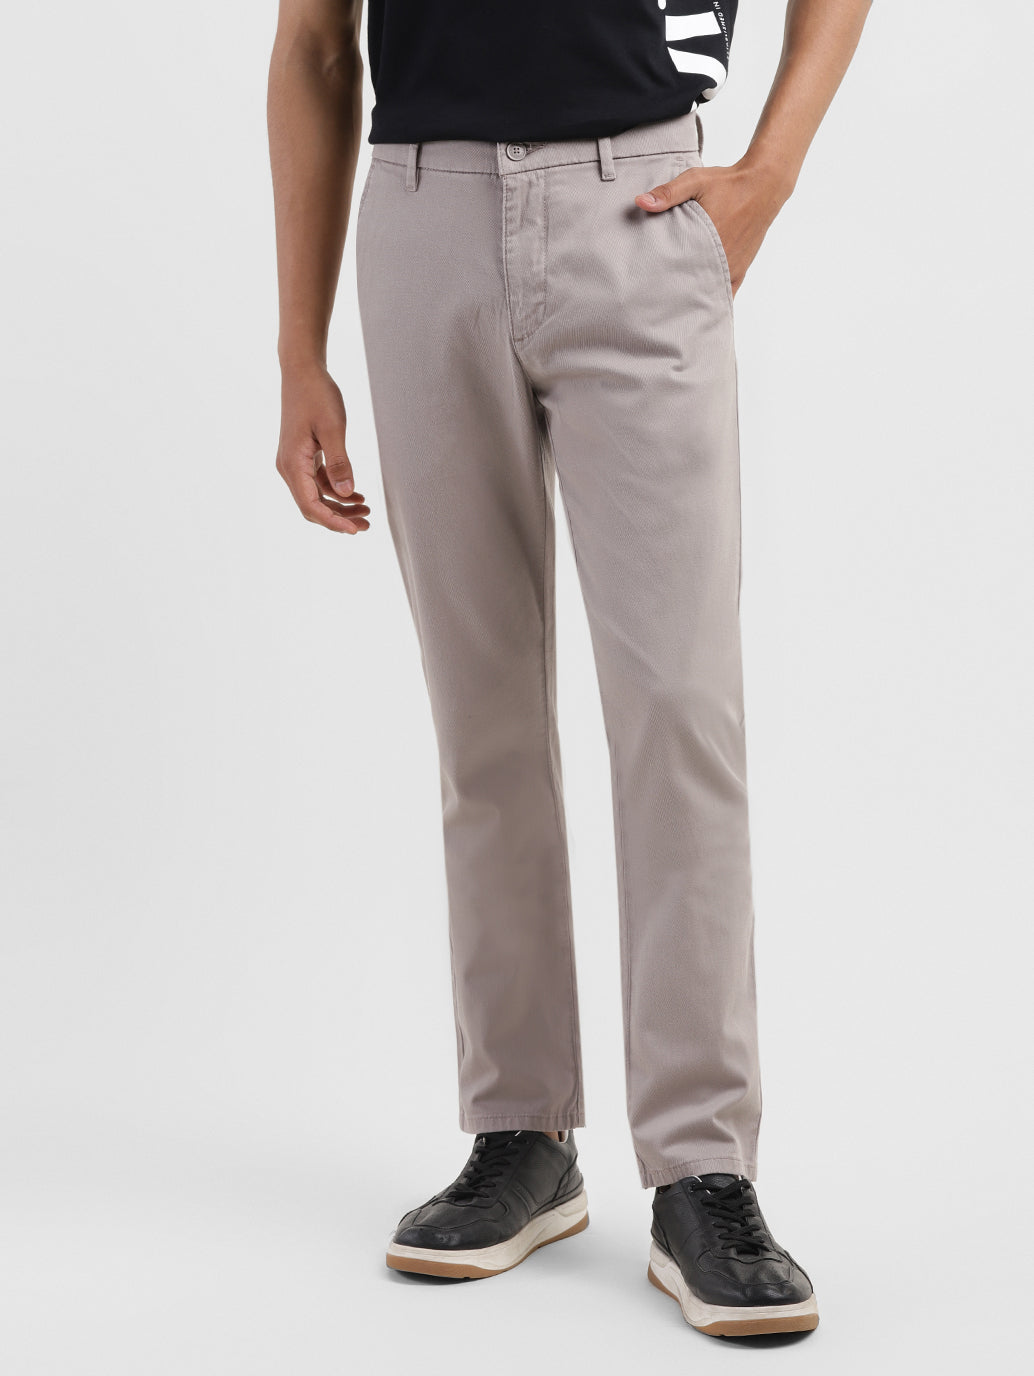 Men's Grey Slim Fit Trousers